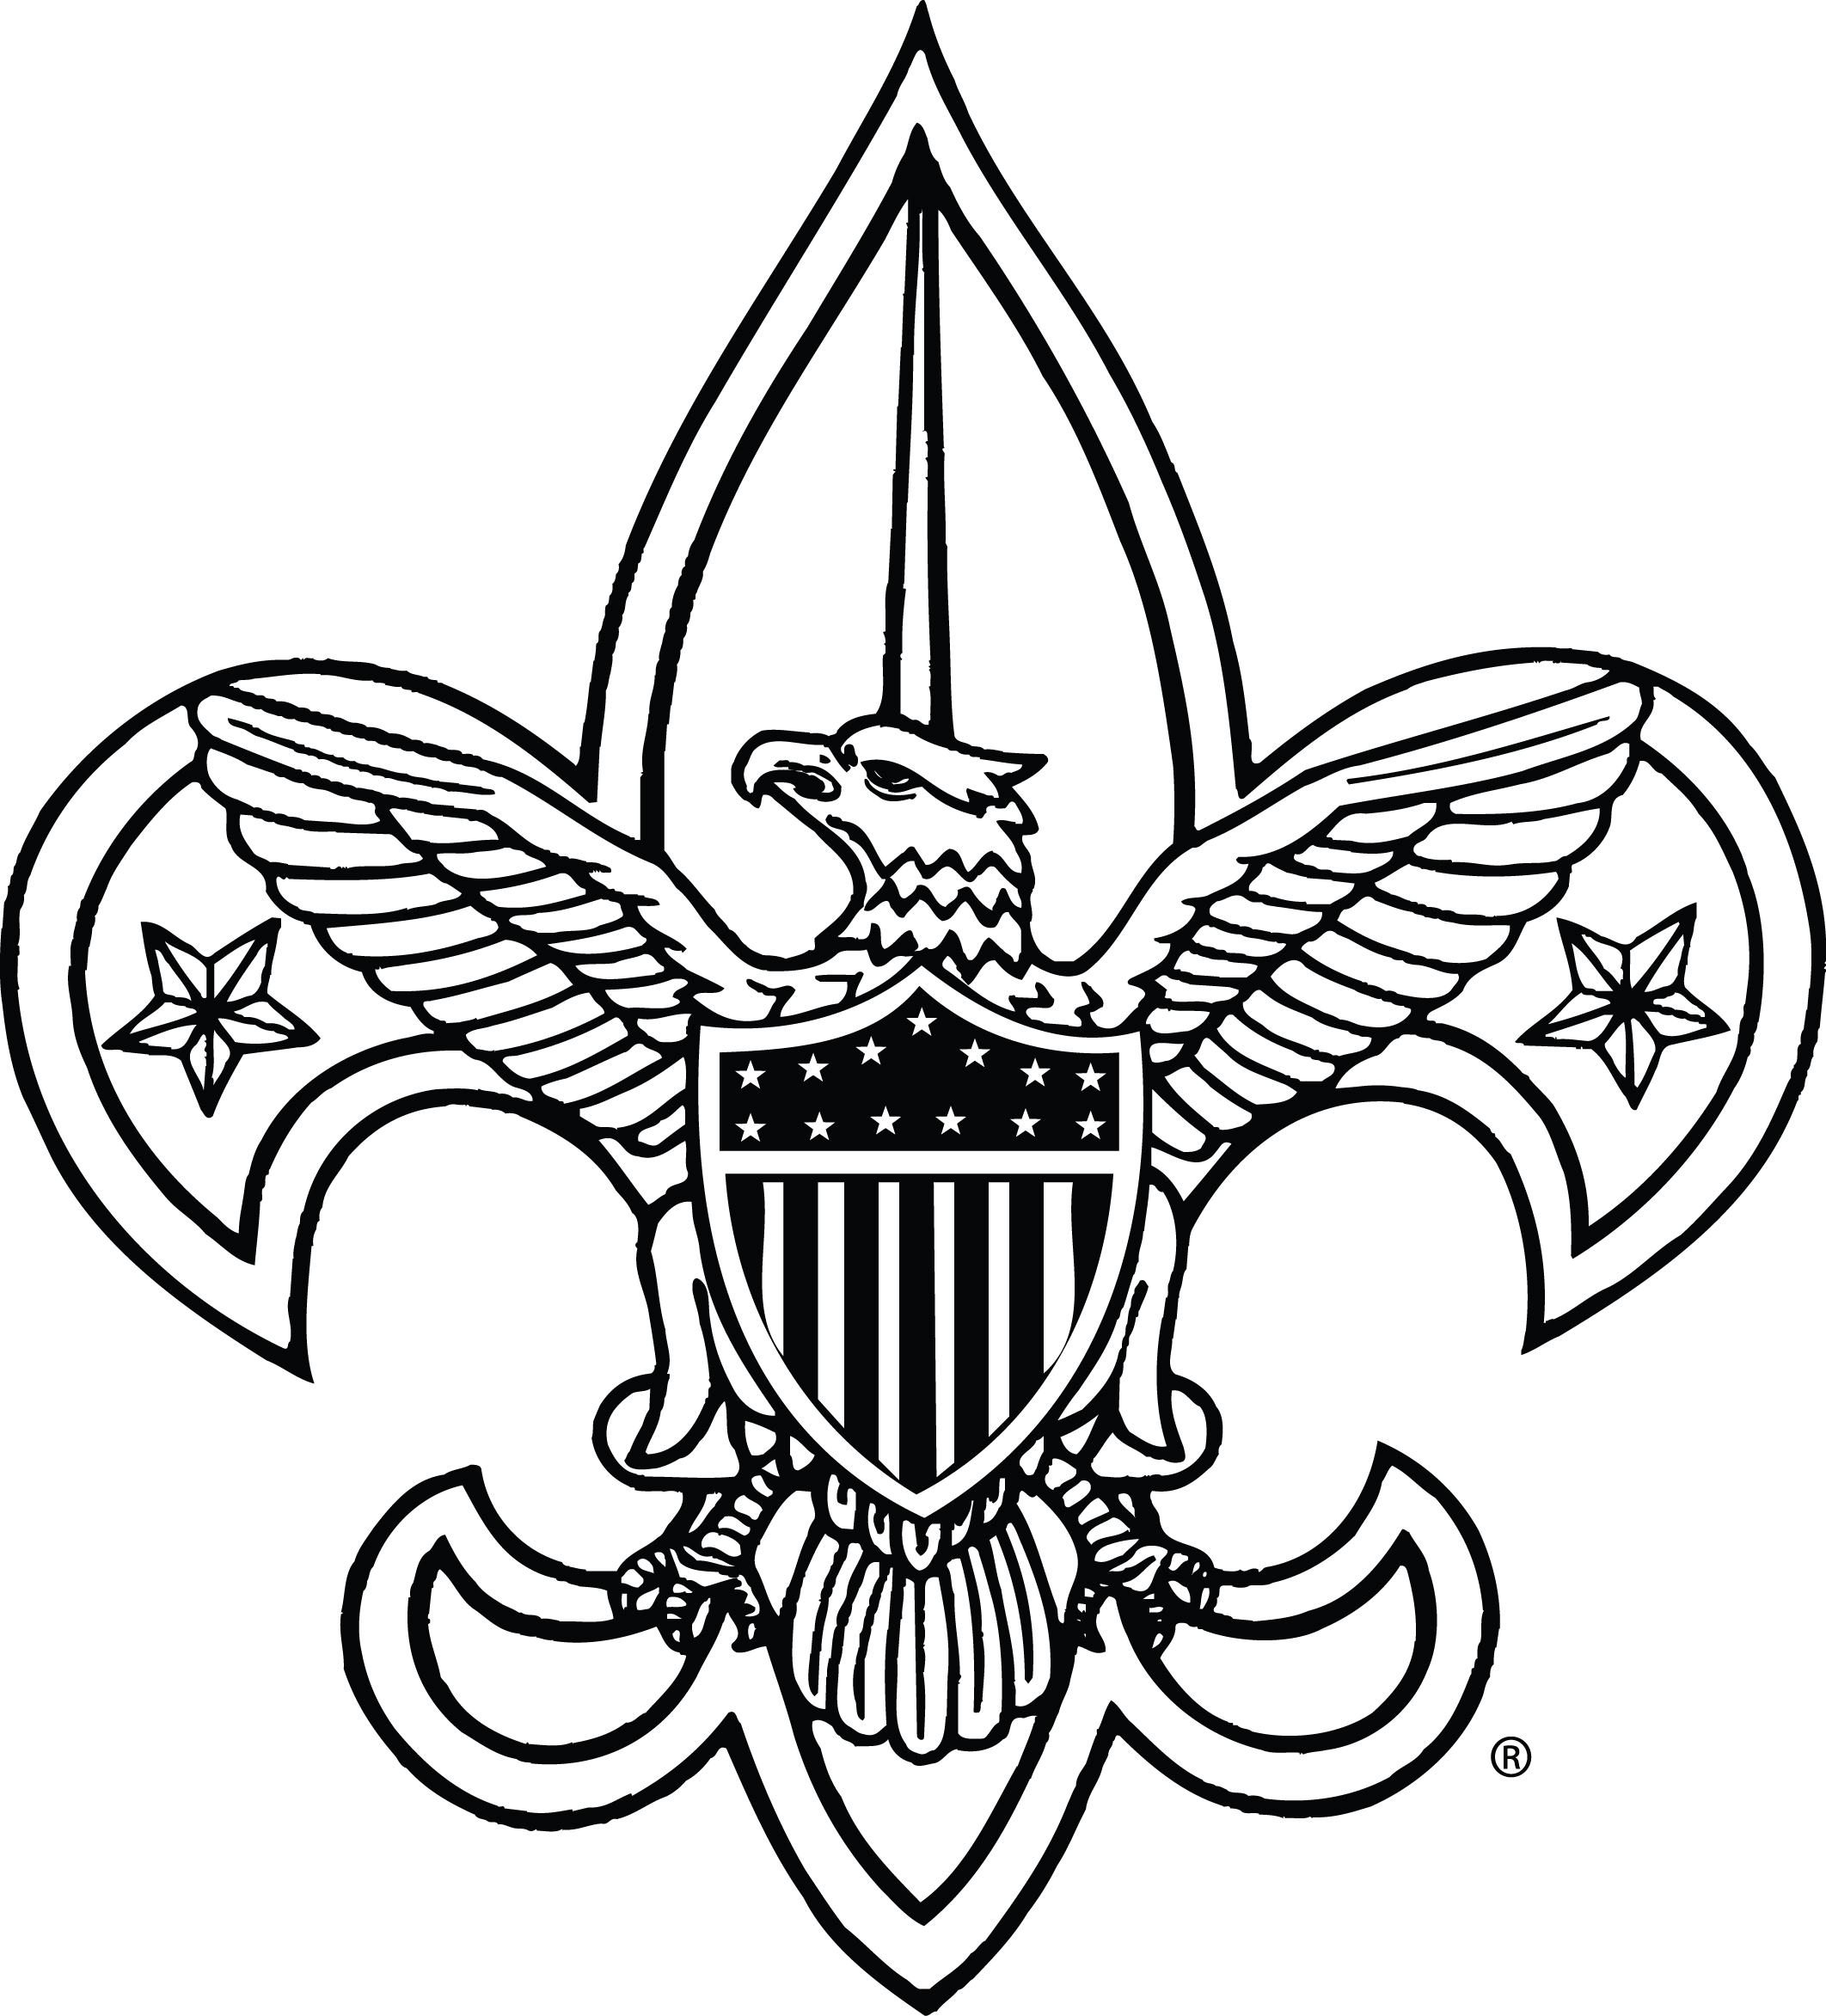 World Scout Emblem - Wikipedia